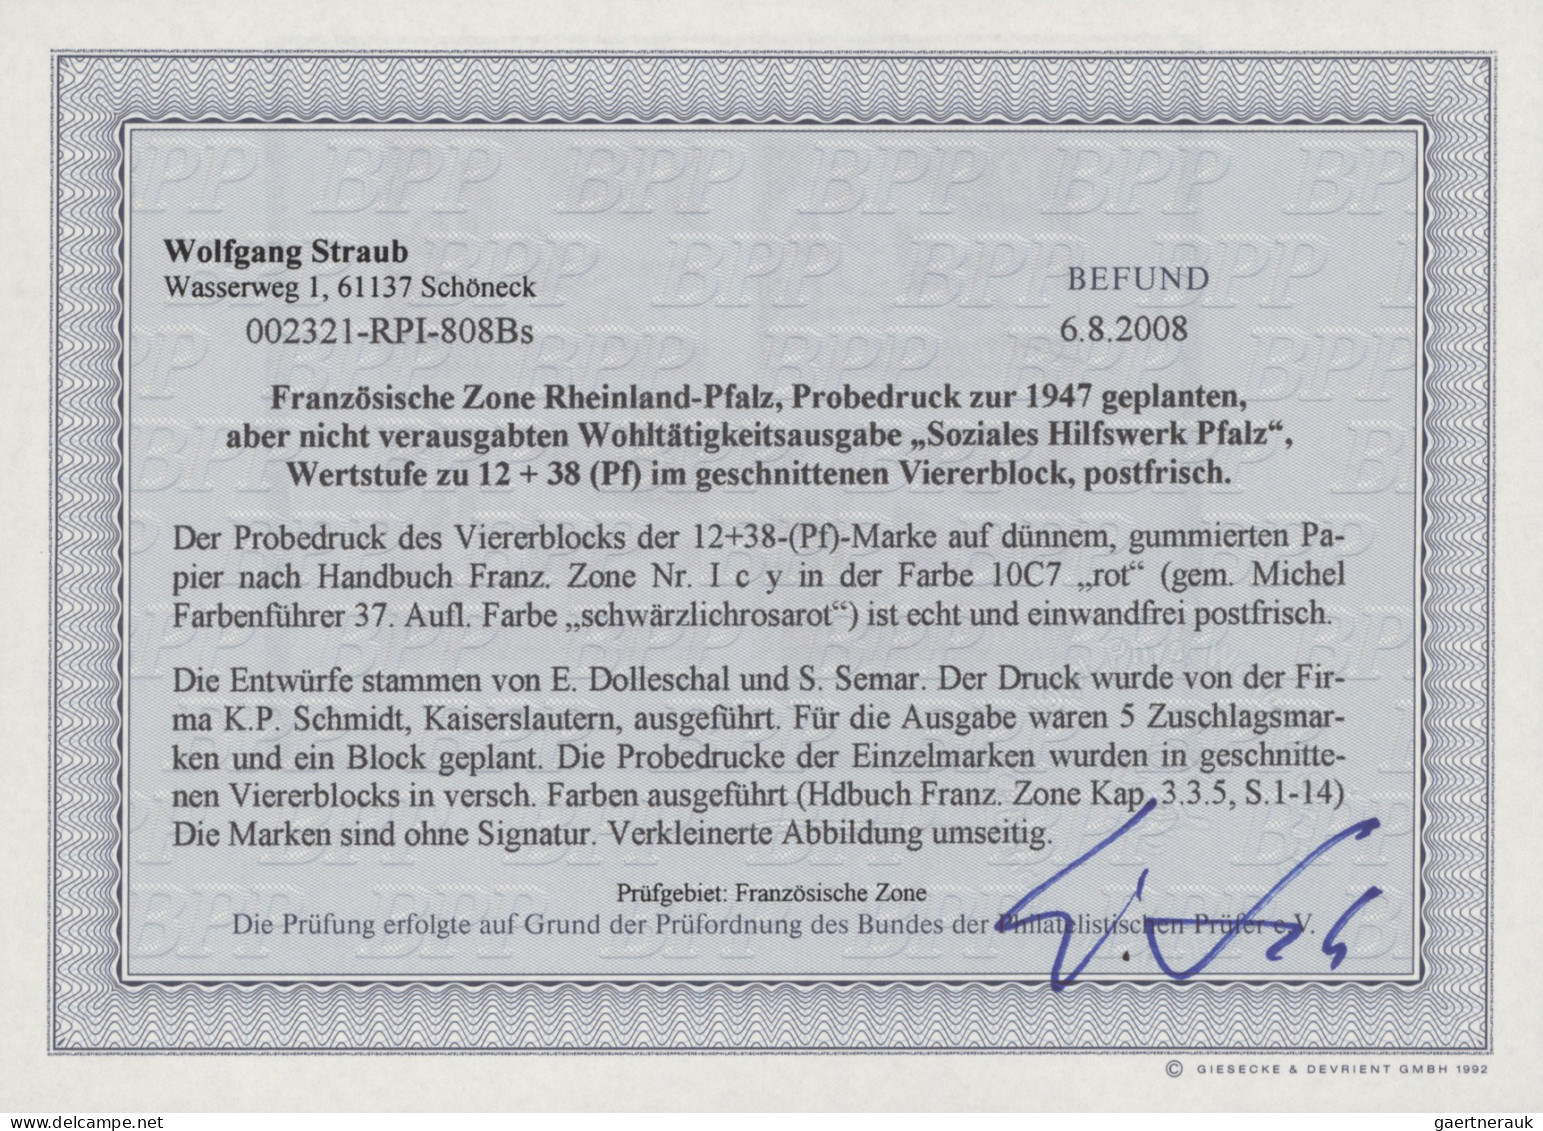 Französische Zone - Rheinland Pfalz: 19 postfrische Probedrucke zur 1947 geplant